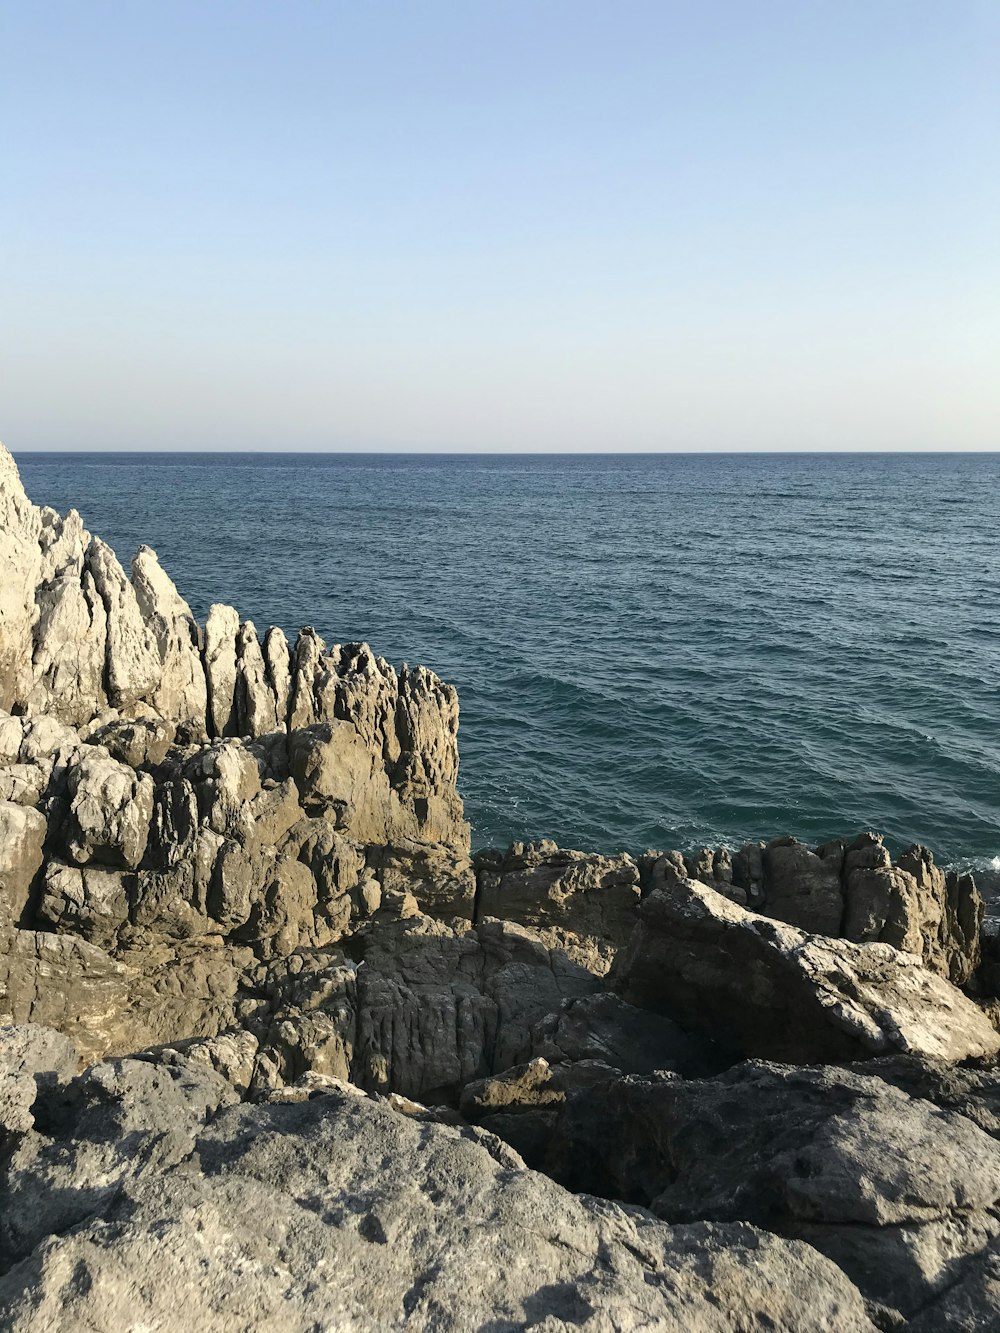 Montaña rocosa gris junto al mar azul durante el día